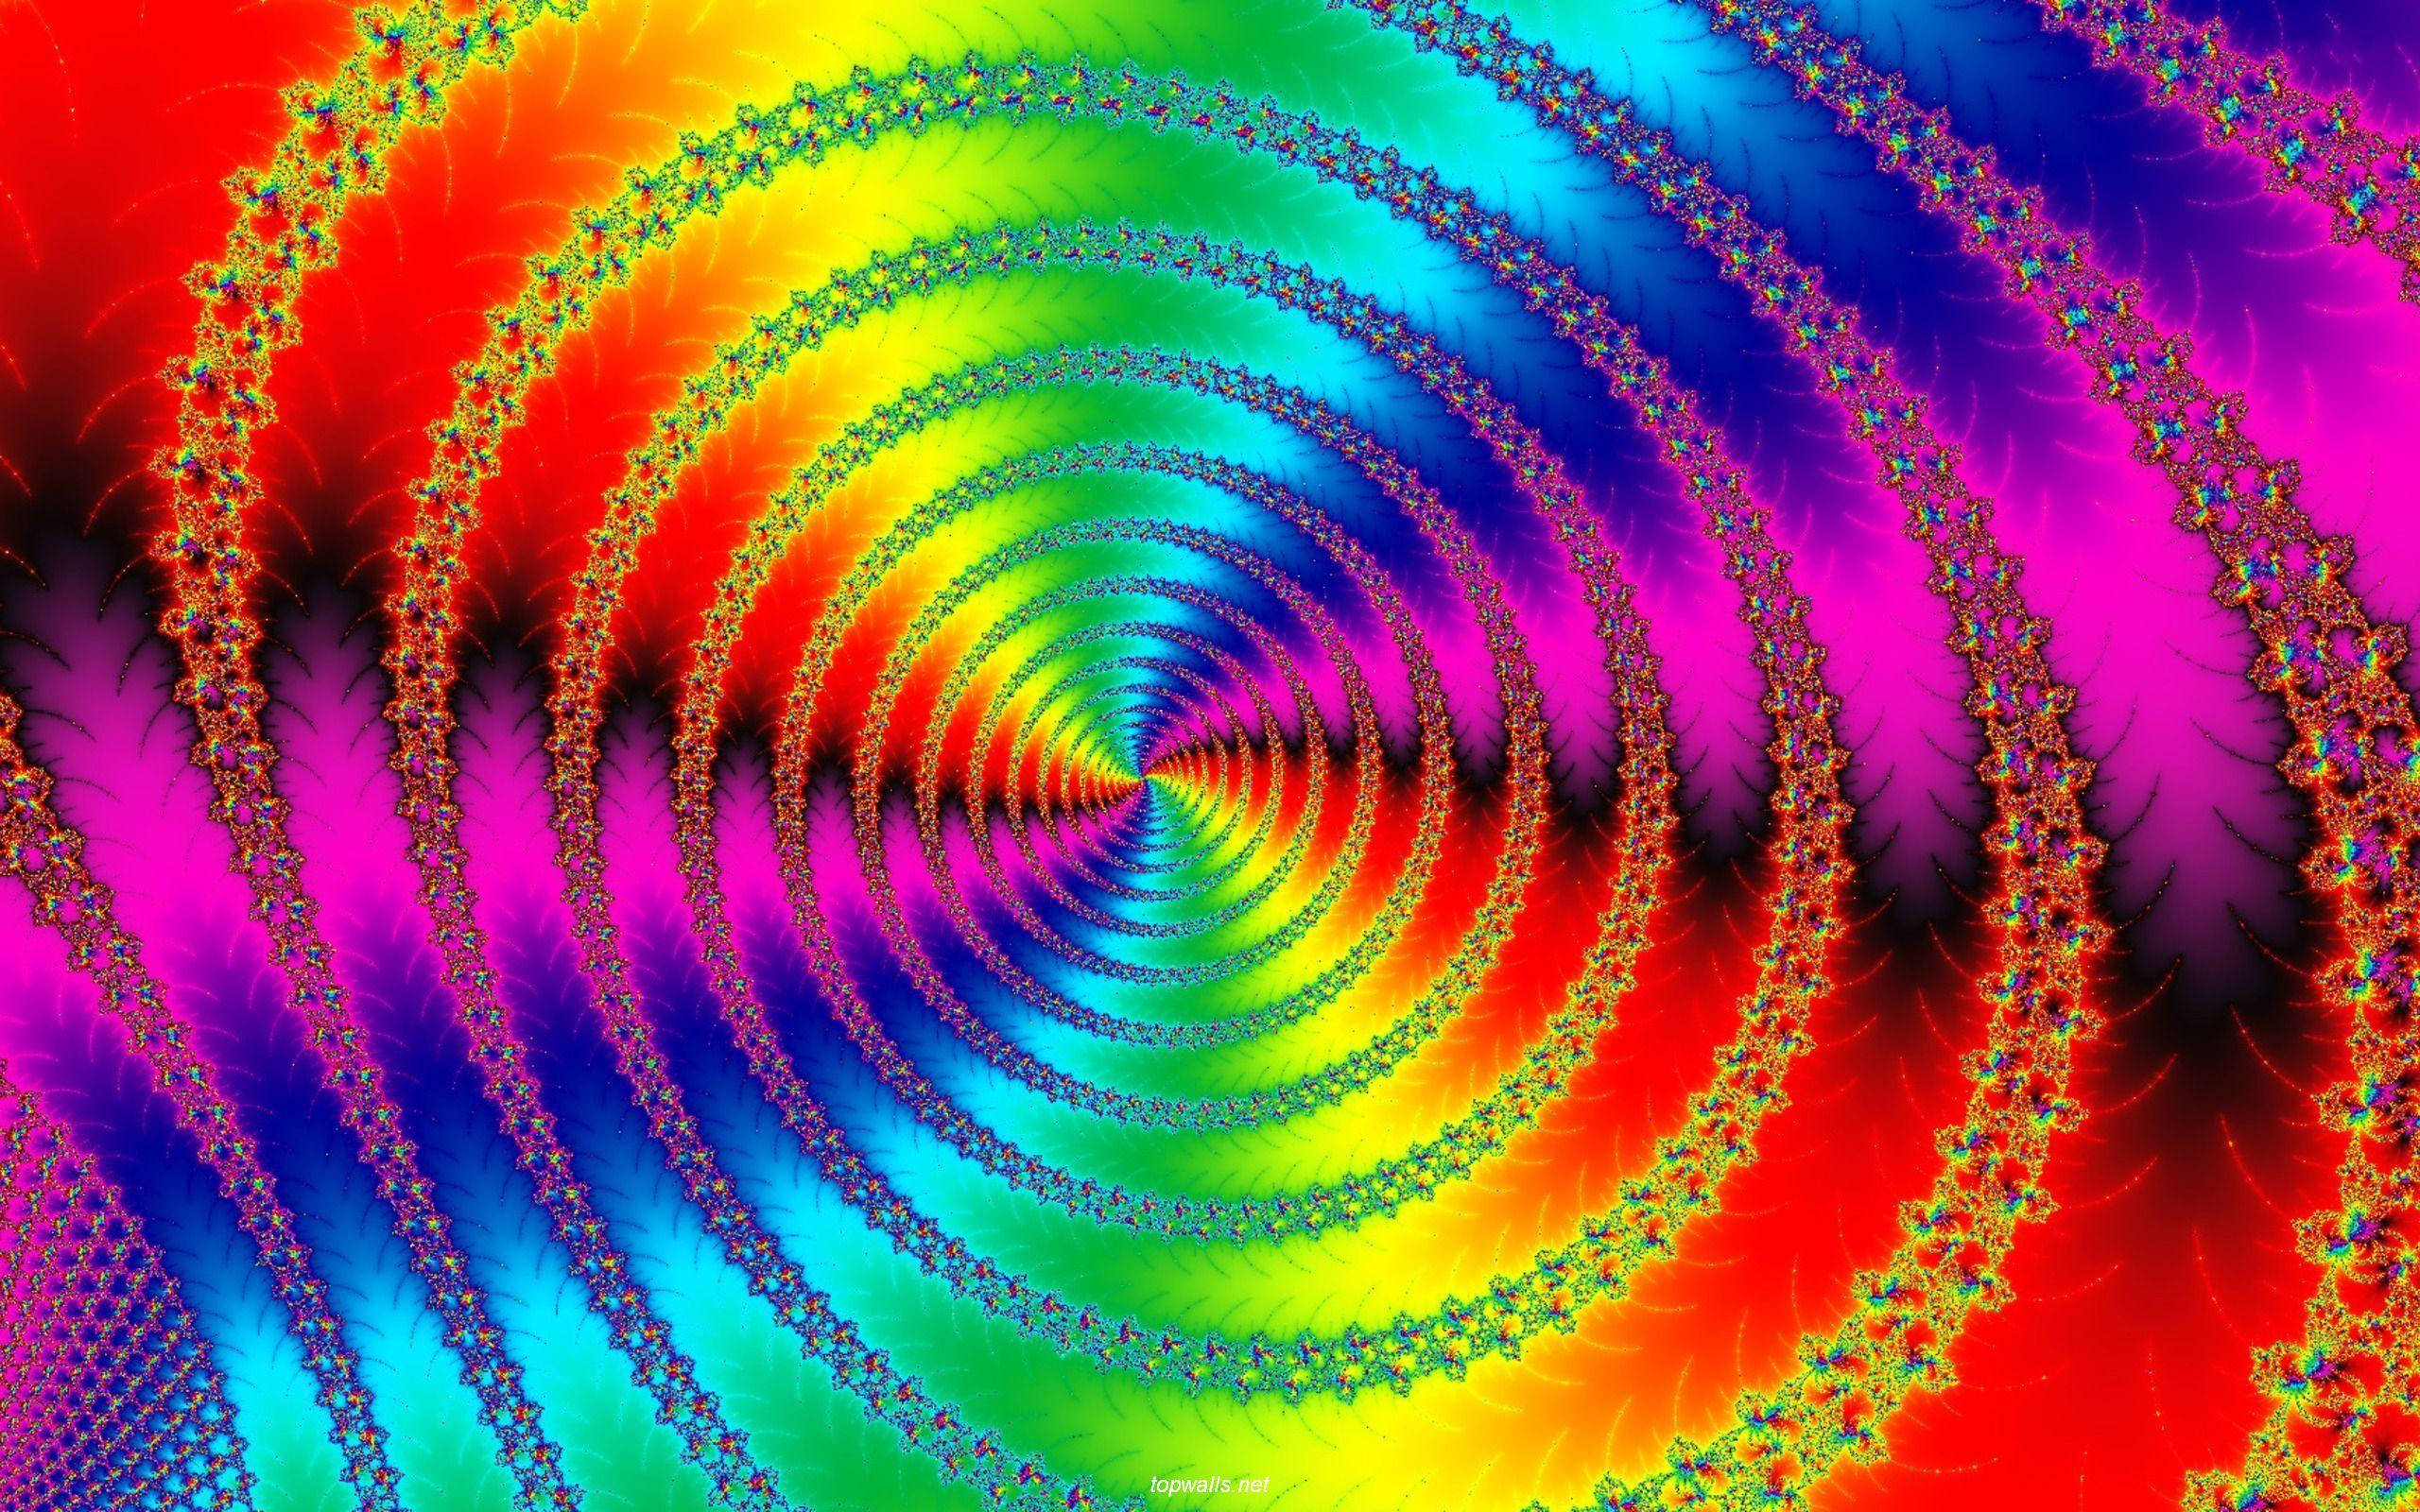 Движущиеся обои на заставку. Двигающие обои. Фрактал спираль. Красивая яркая абстракция. Цветные Фракталы.